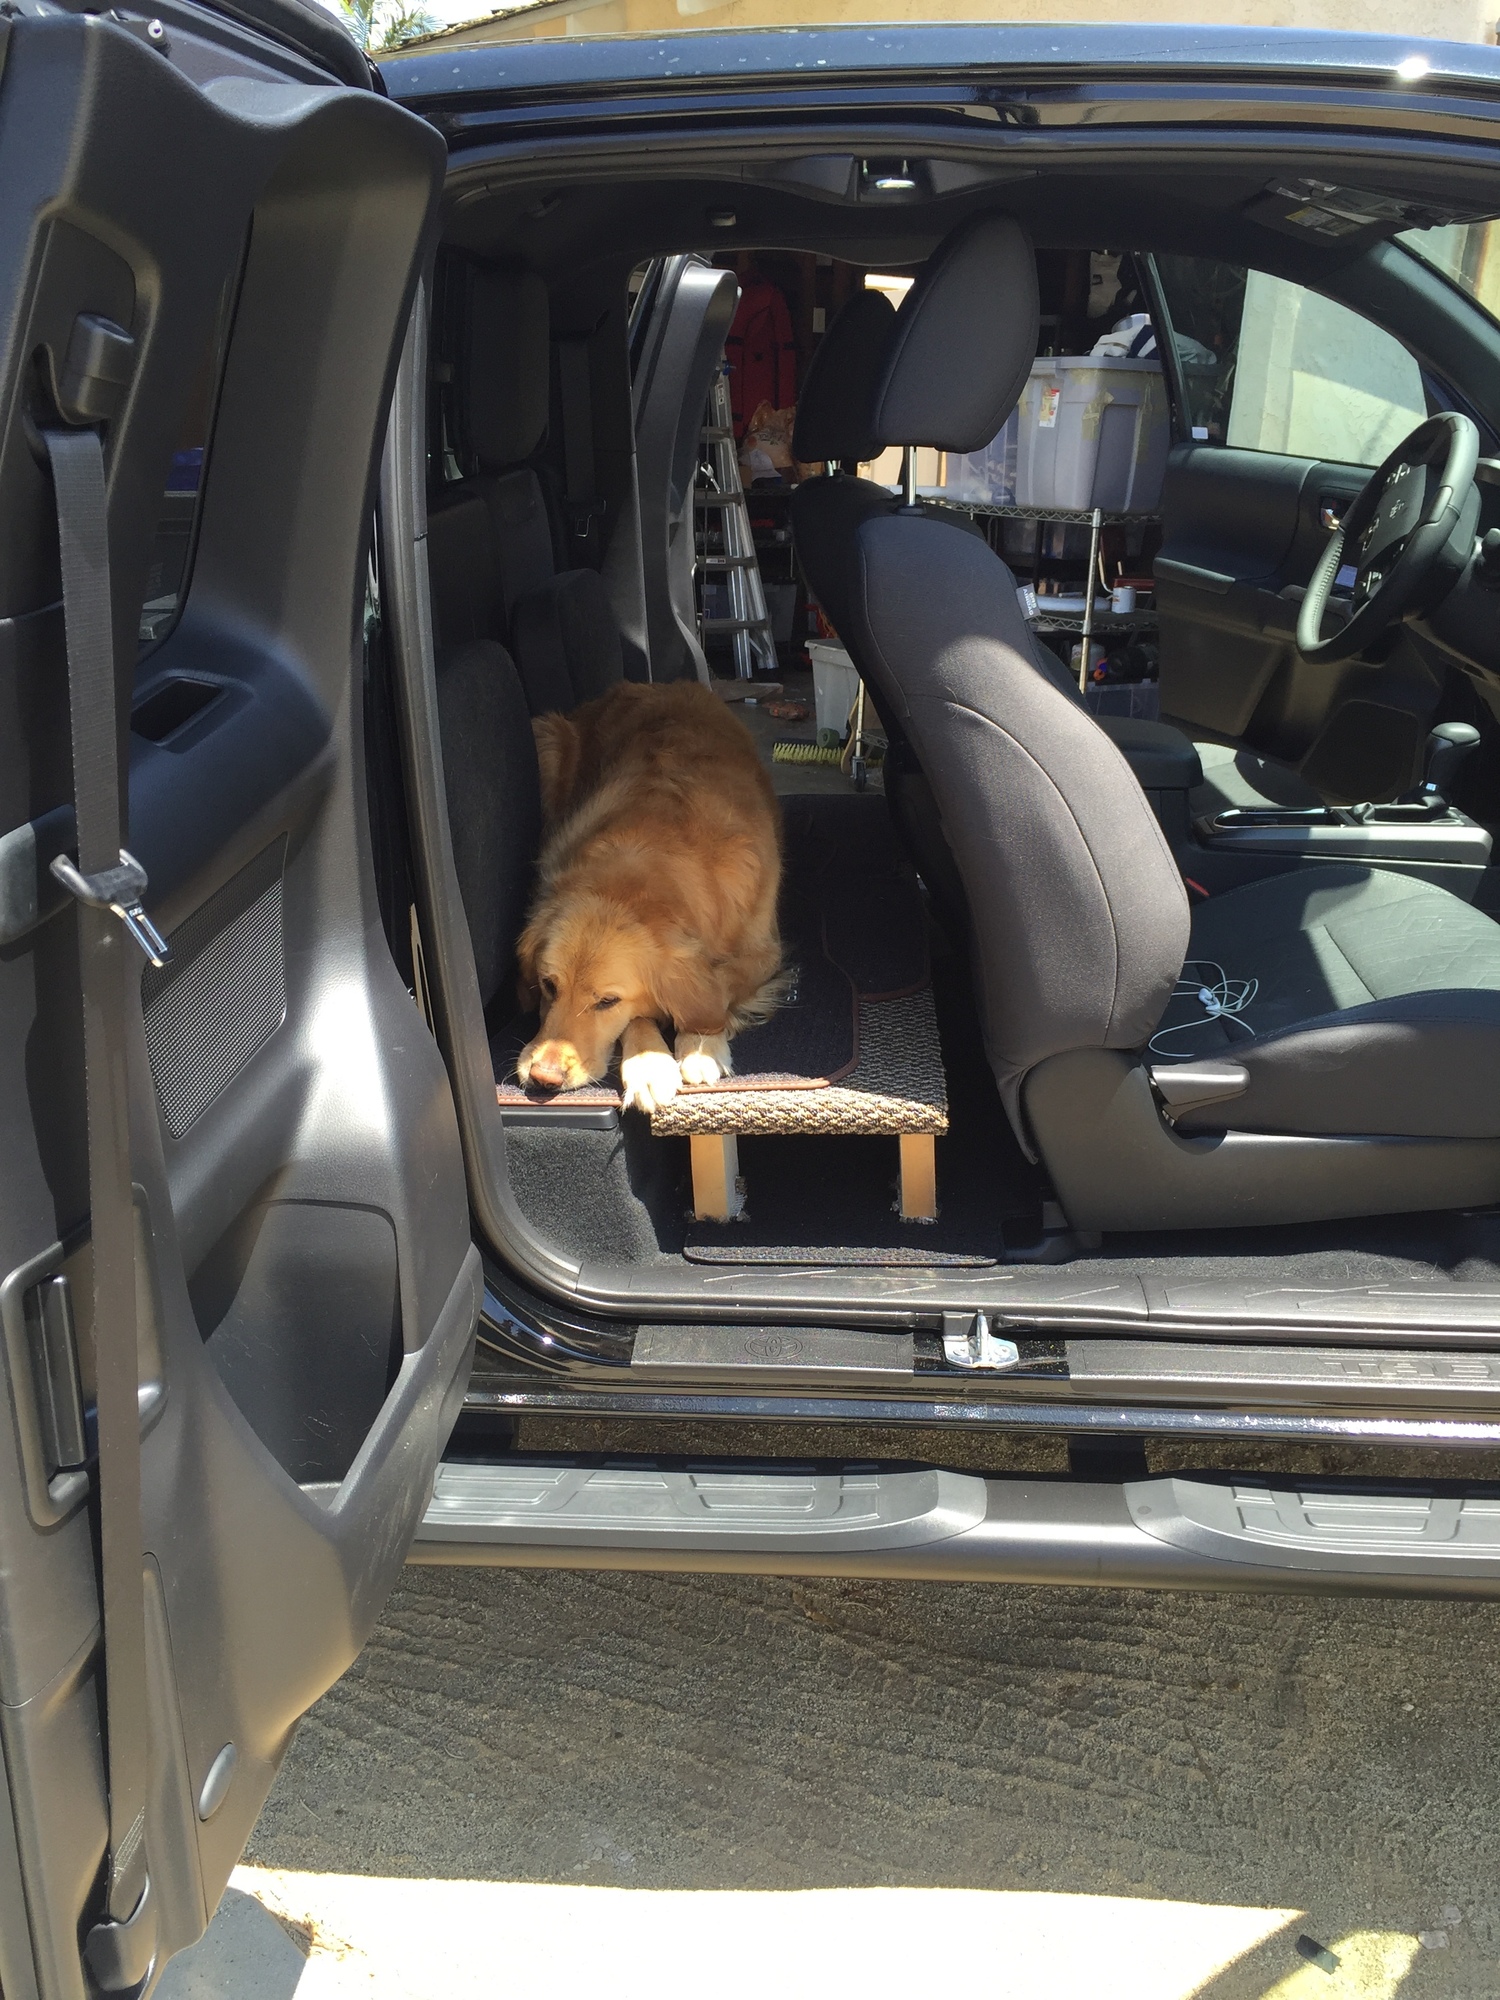 2018 Toyota Tacoma 4x4 Access Cab Dog, Can You Put A Baby Seat In Toyota Tacoma Access Cab